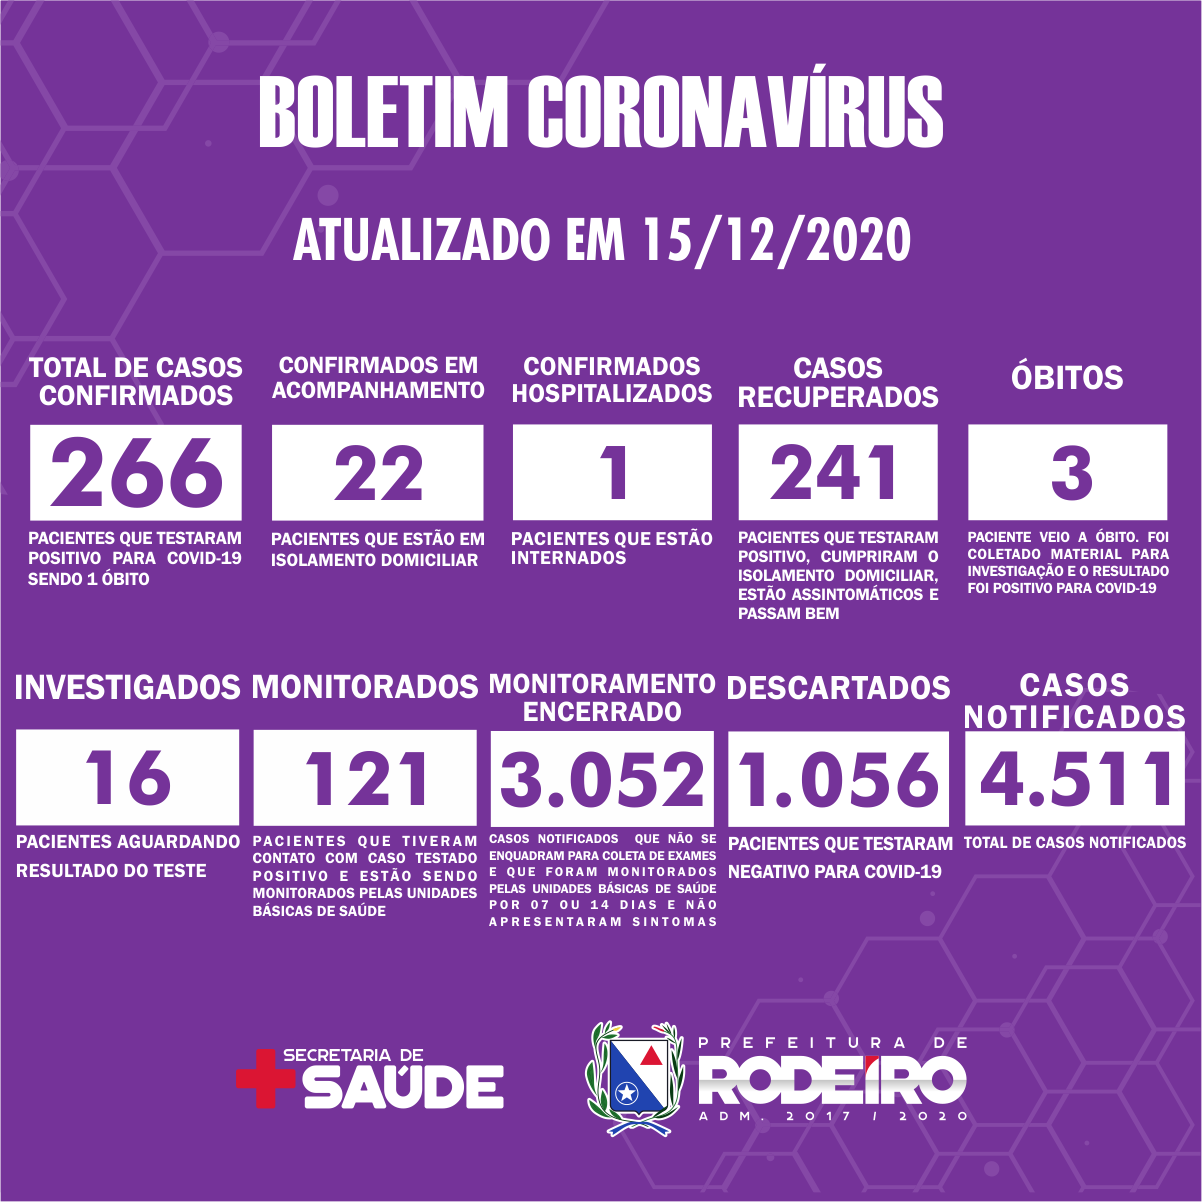 Boletim Epidemiológico do Município de Rodeiro sobre coronavírus, atualizado em 15/12/2020